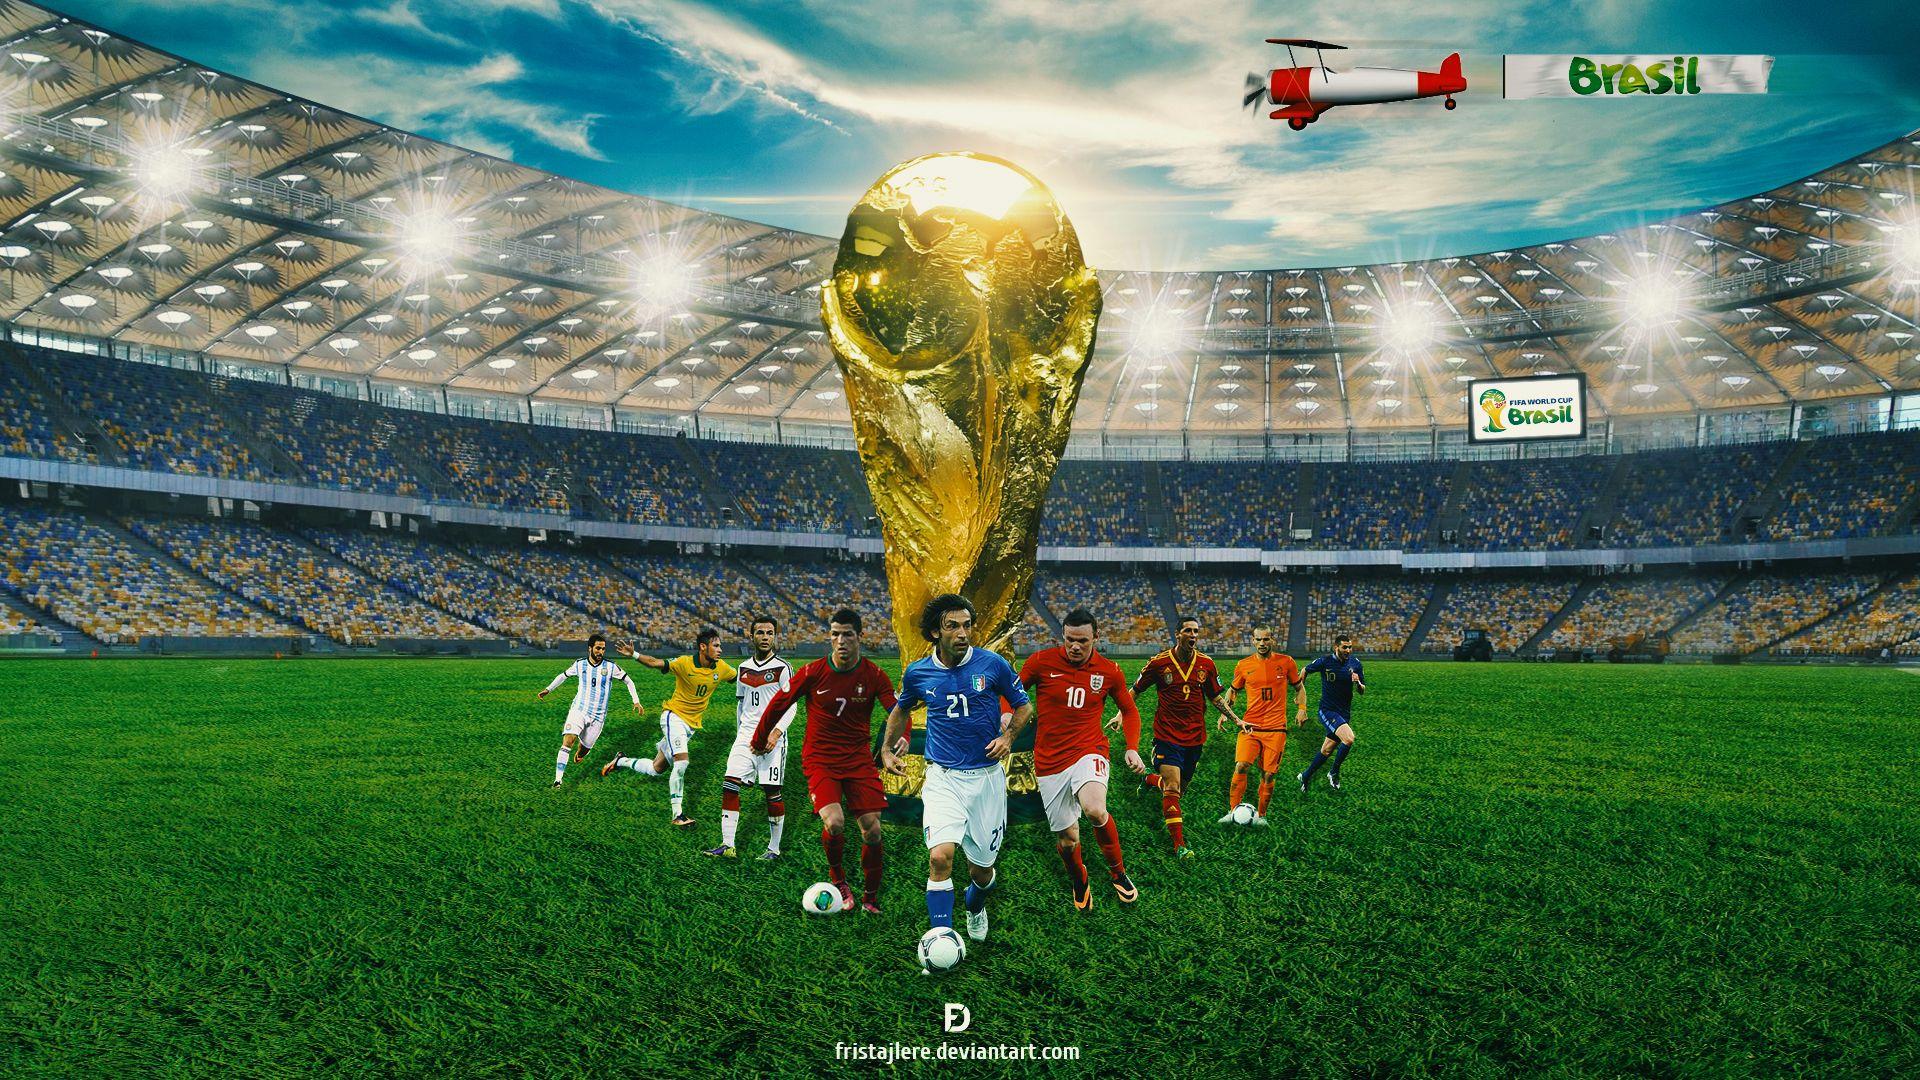 FIFA World Cup 2014 Brasil